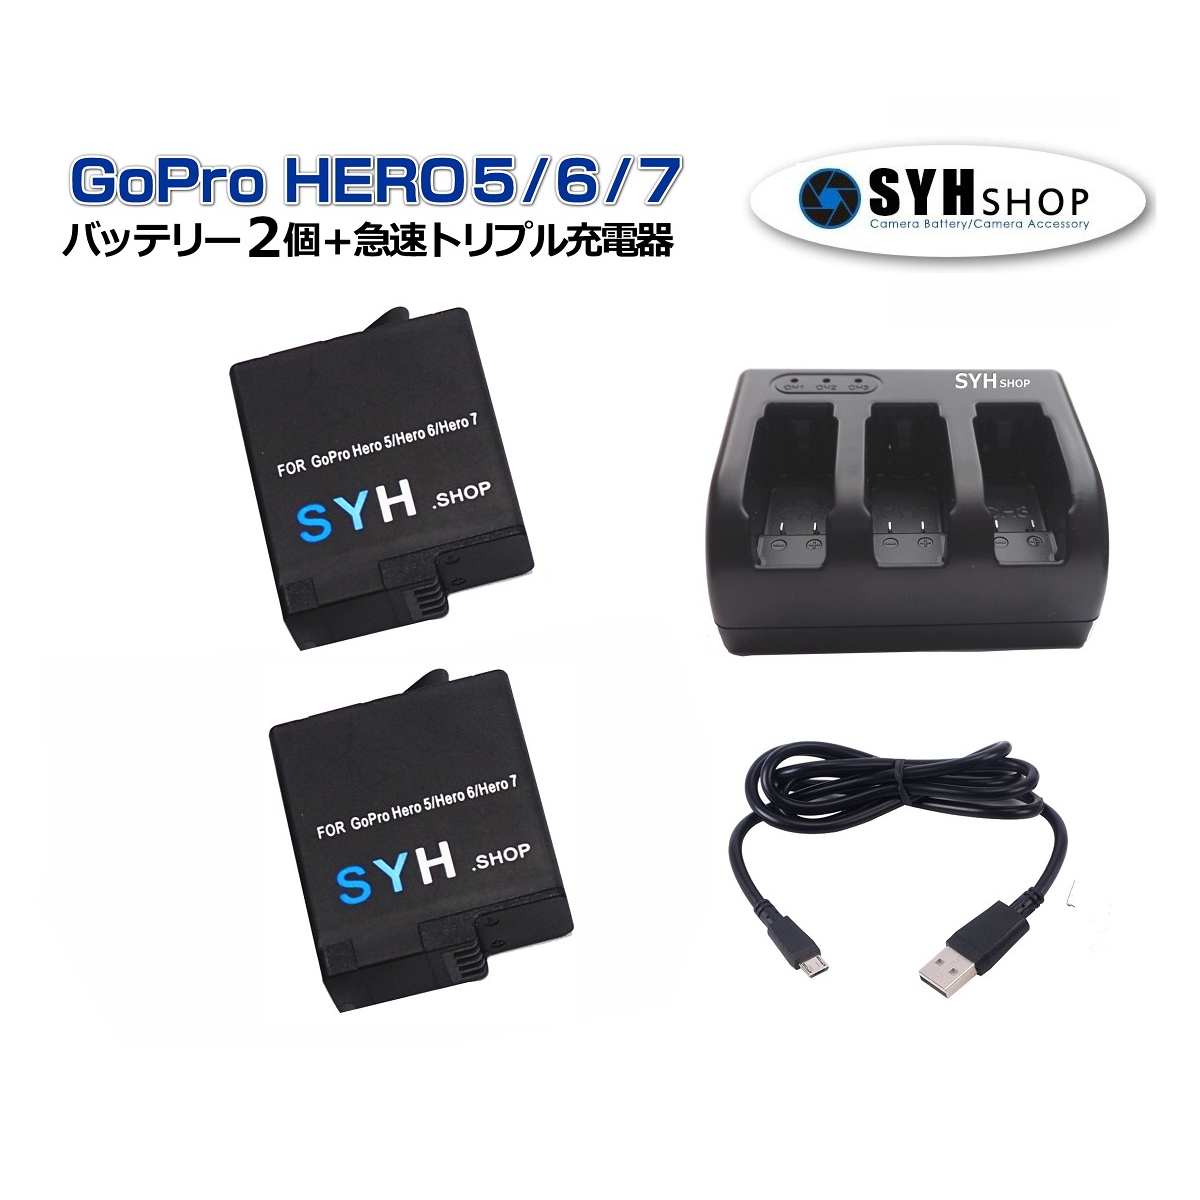 【楽天市場】GoPro バッテリーセット Gopro HERO7 HERO6 HERO5 HERO2018 対応 SYH SHOPオリジナル